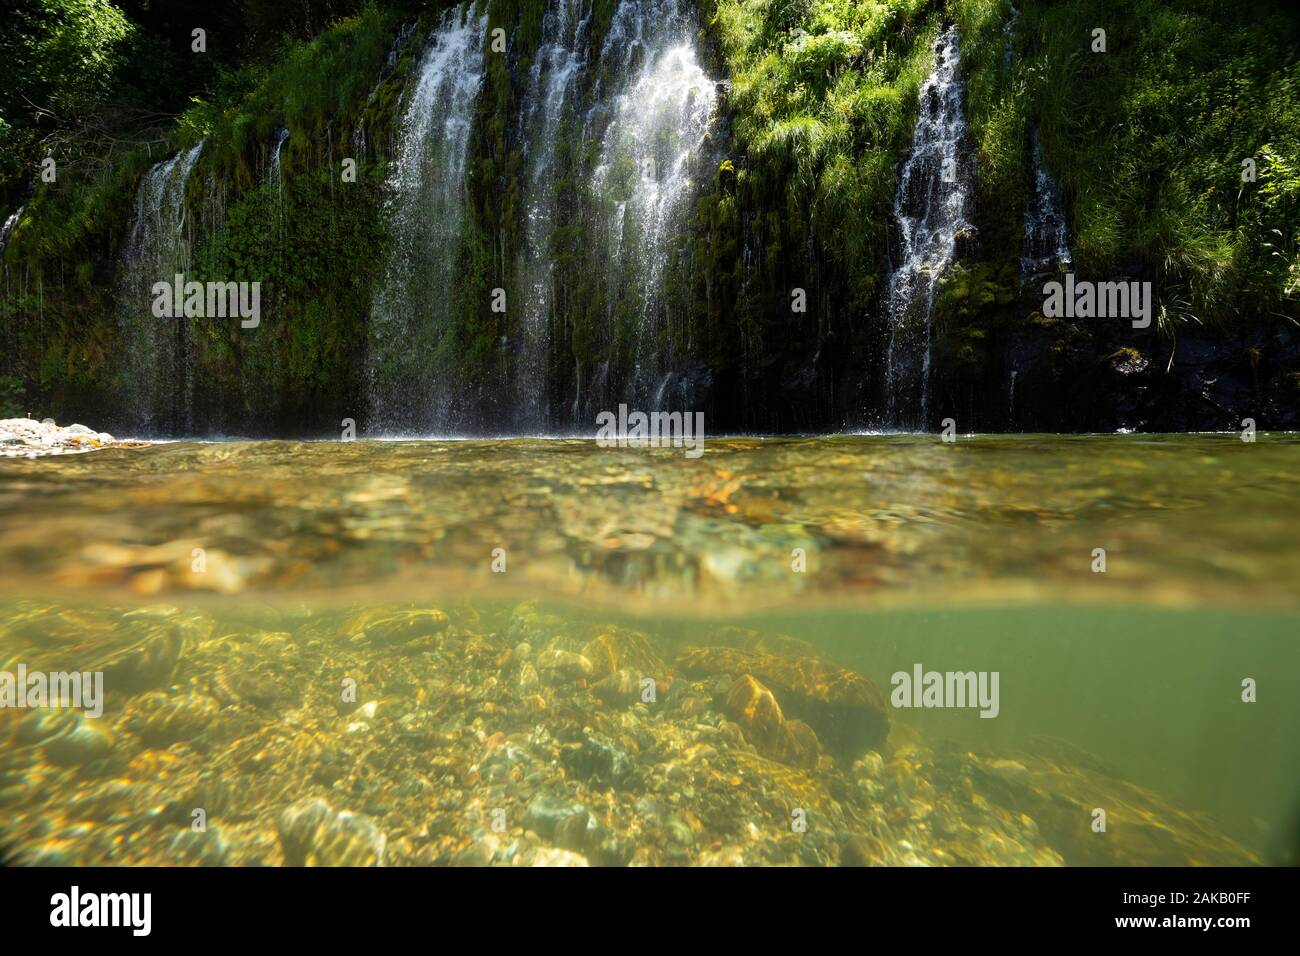 La surface claire de la rivière Sacramento et éclaboussant Mossbrae Falls, Dunsmuir, California, USA Banque D'Images